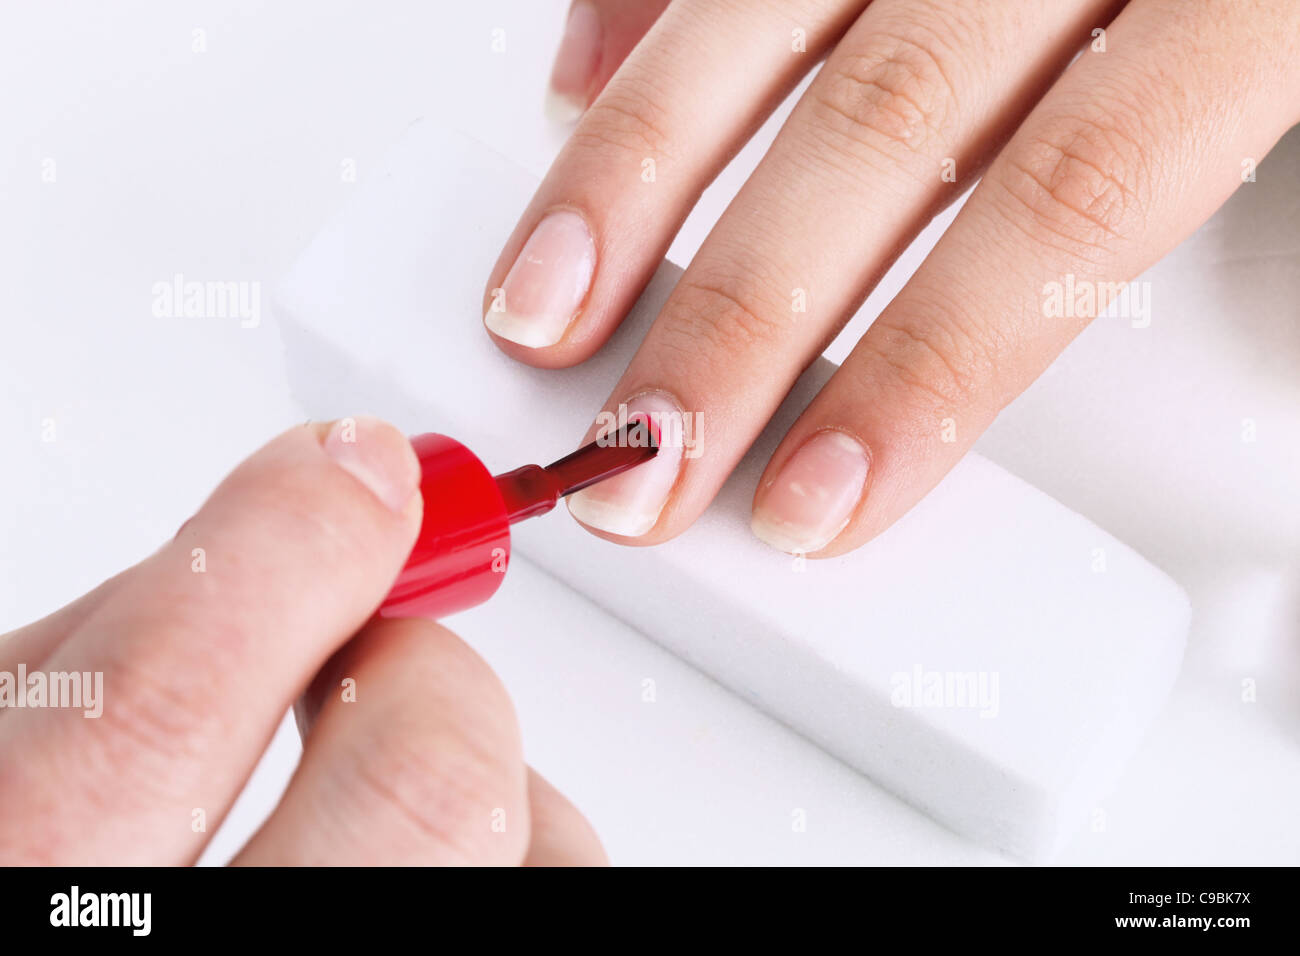 Spazzola per unghie con vernice rossa nella manicure Foto Stock